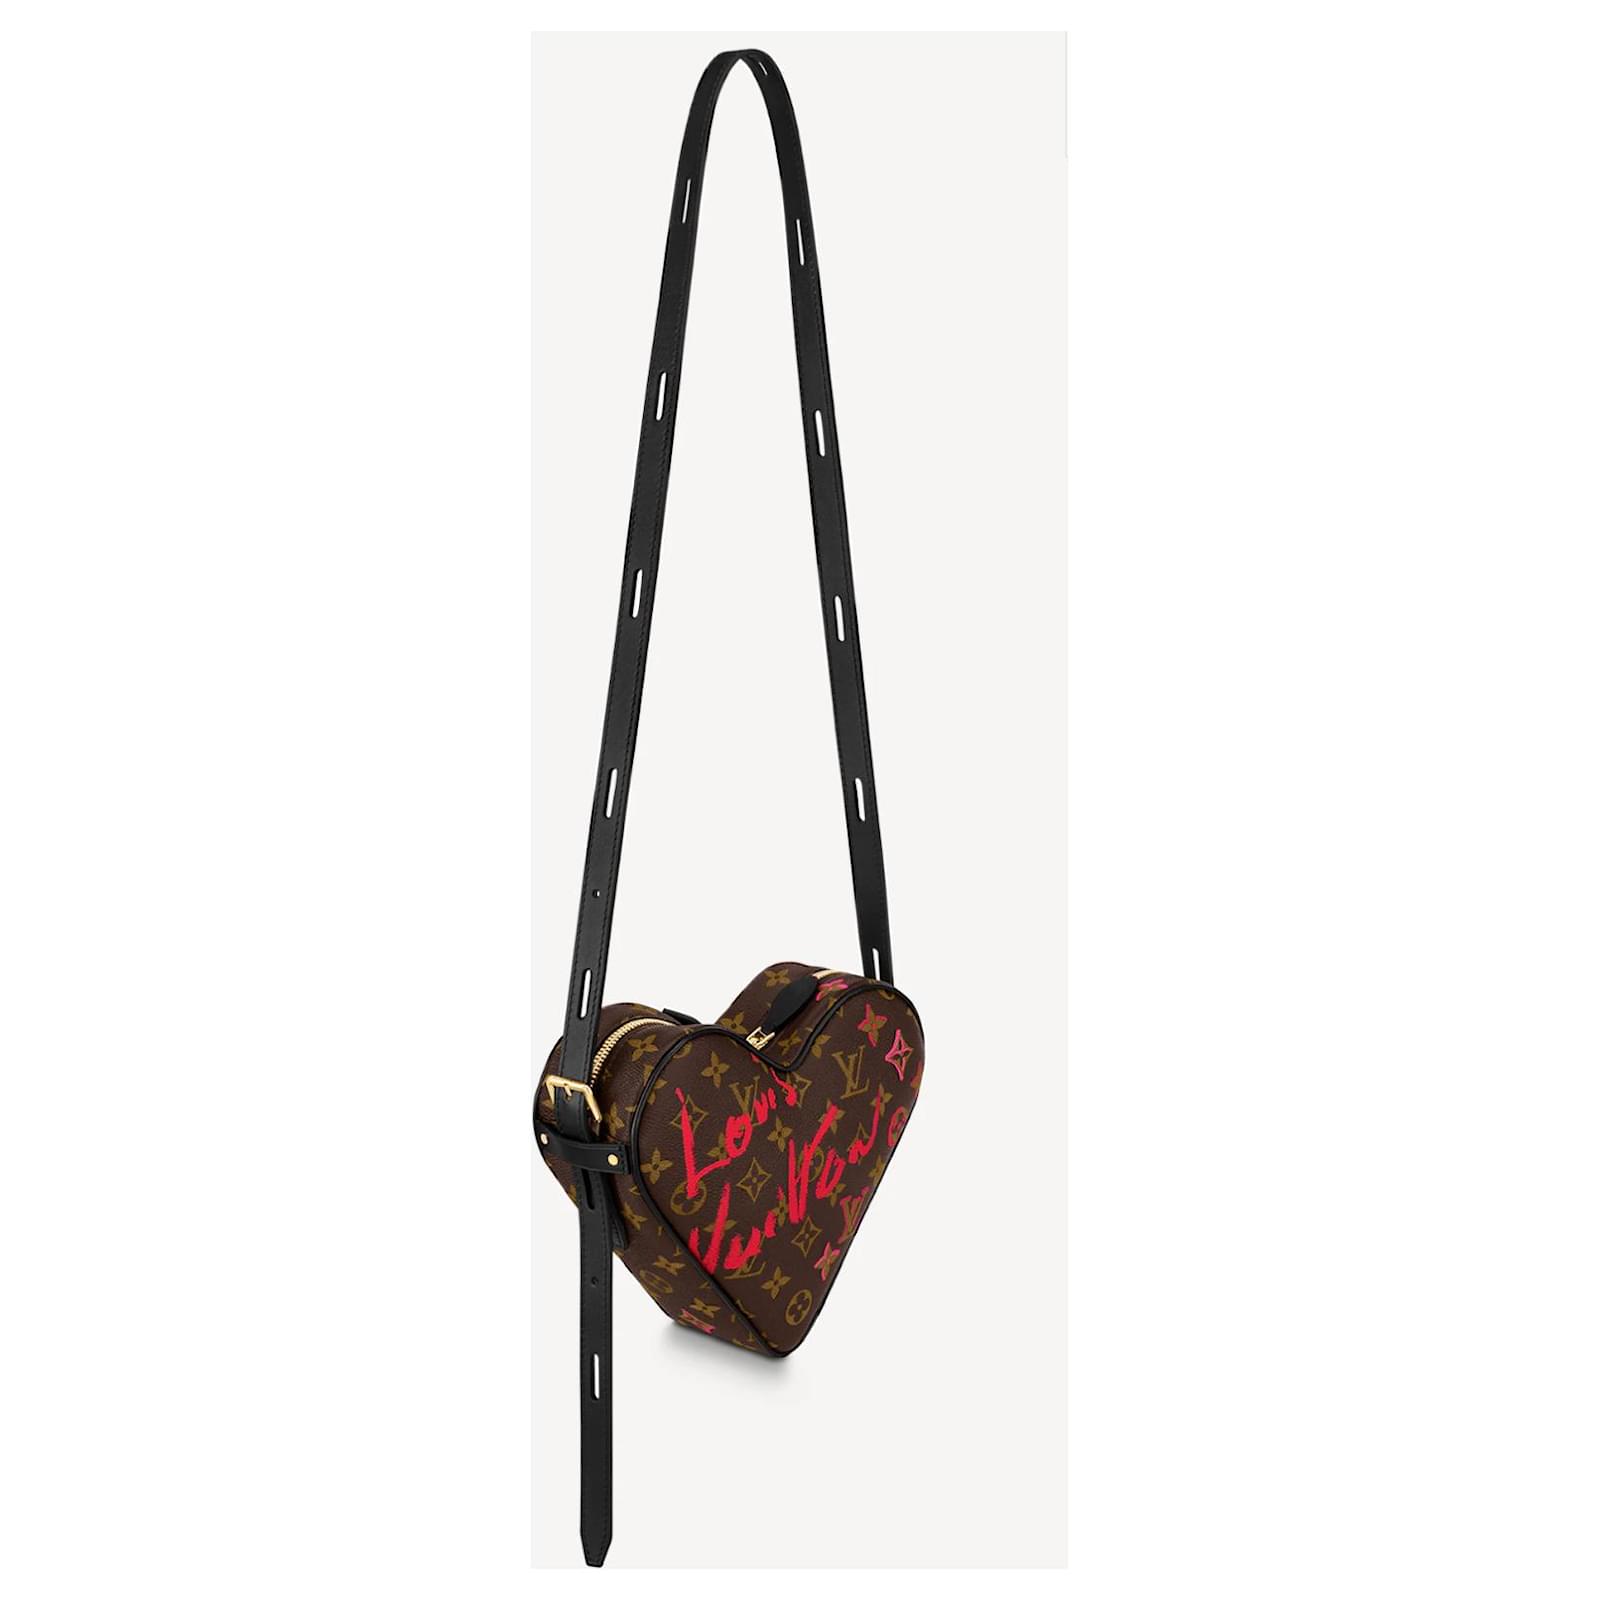 LOUIS VUITTON-LV Limited Edition SAC COEUR Heart Shape Handbag